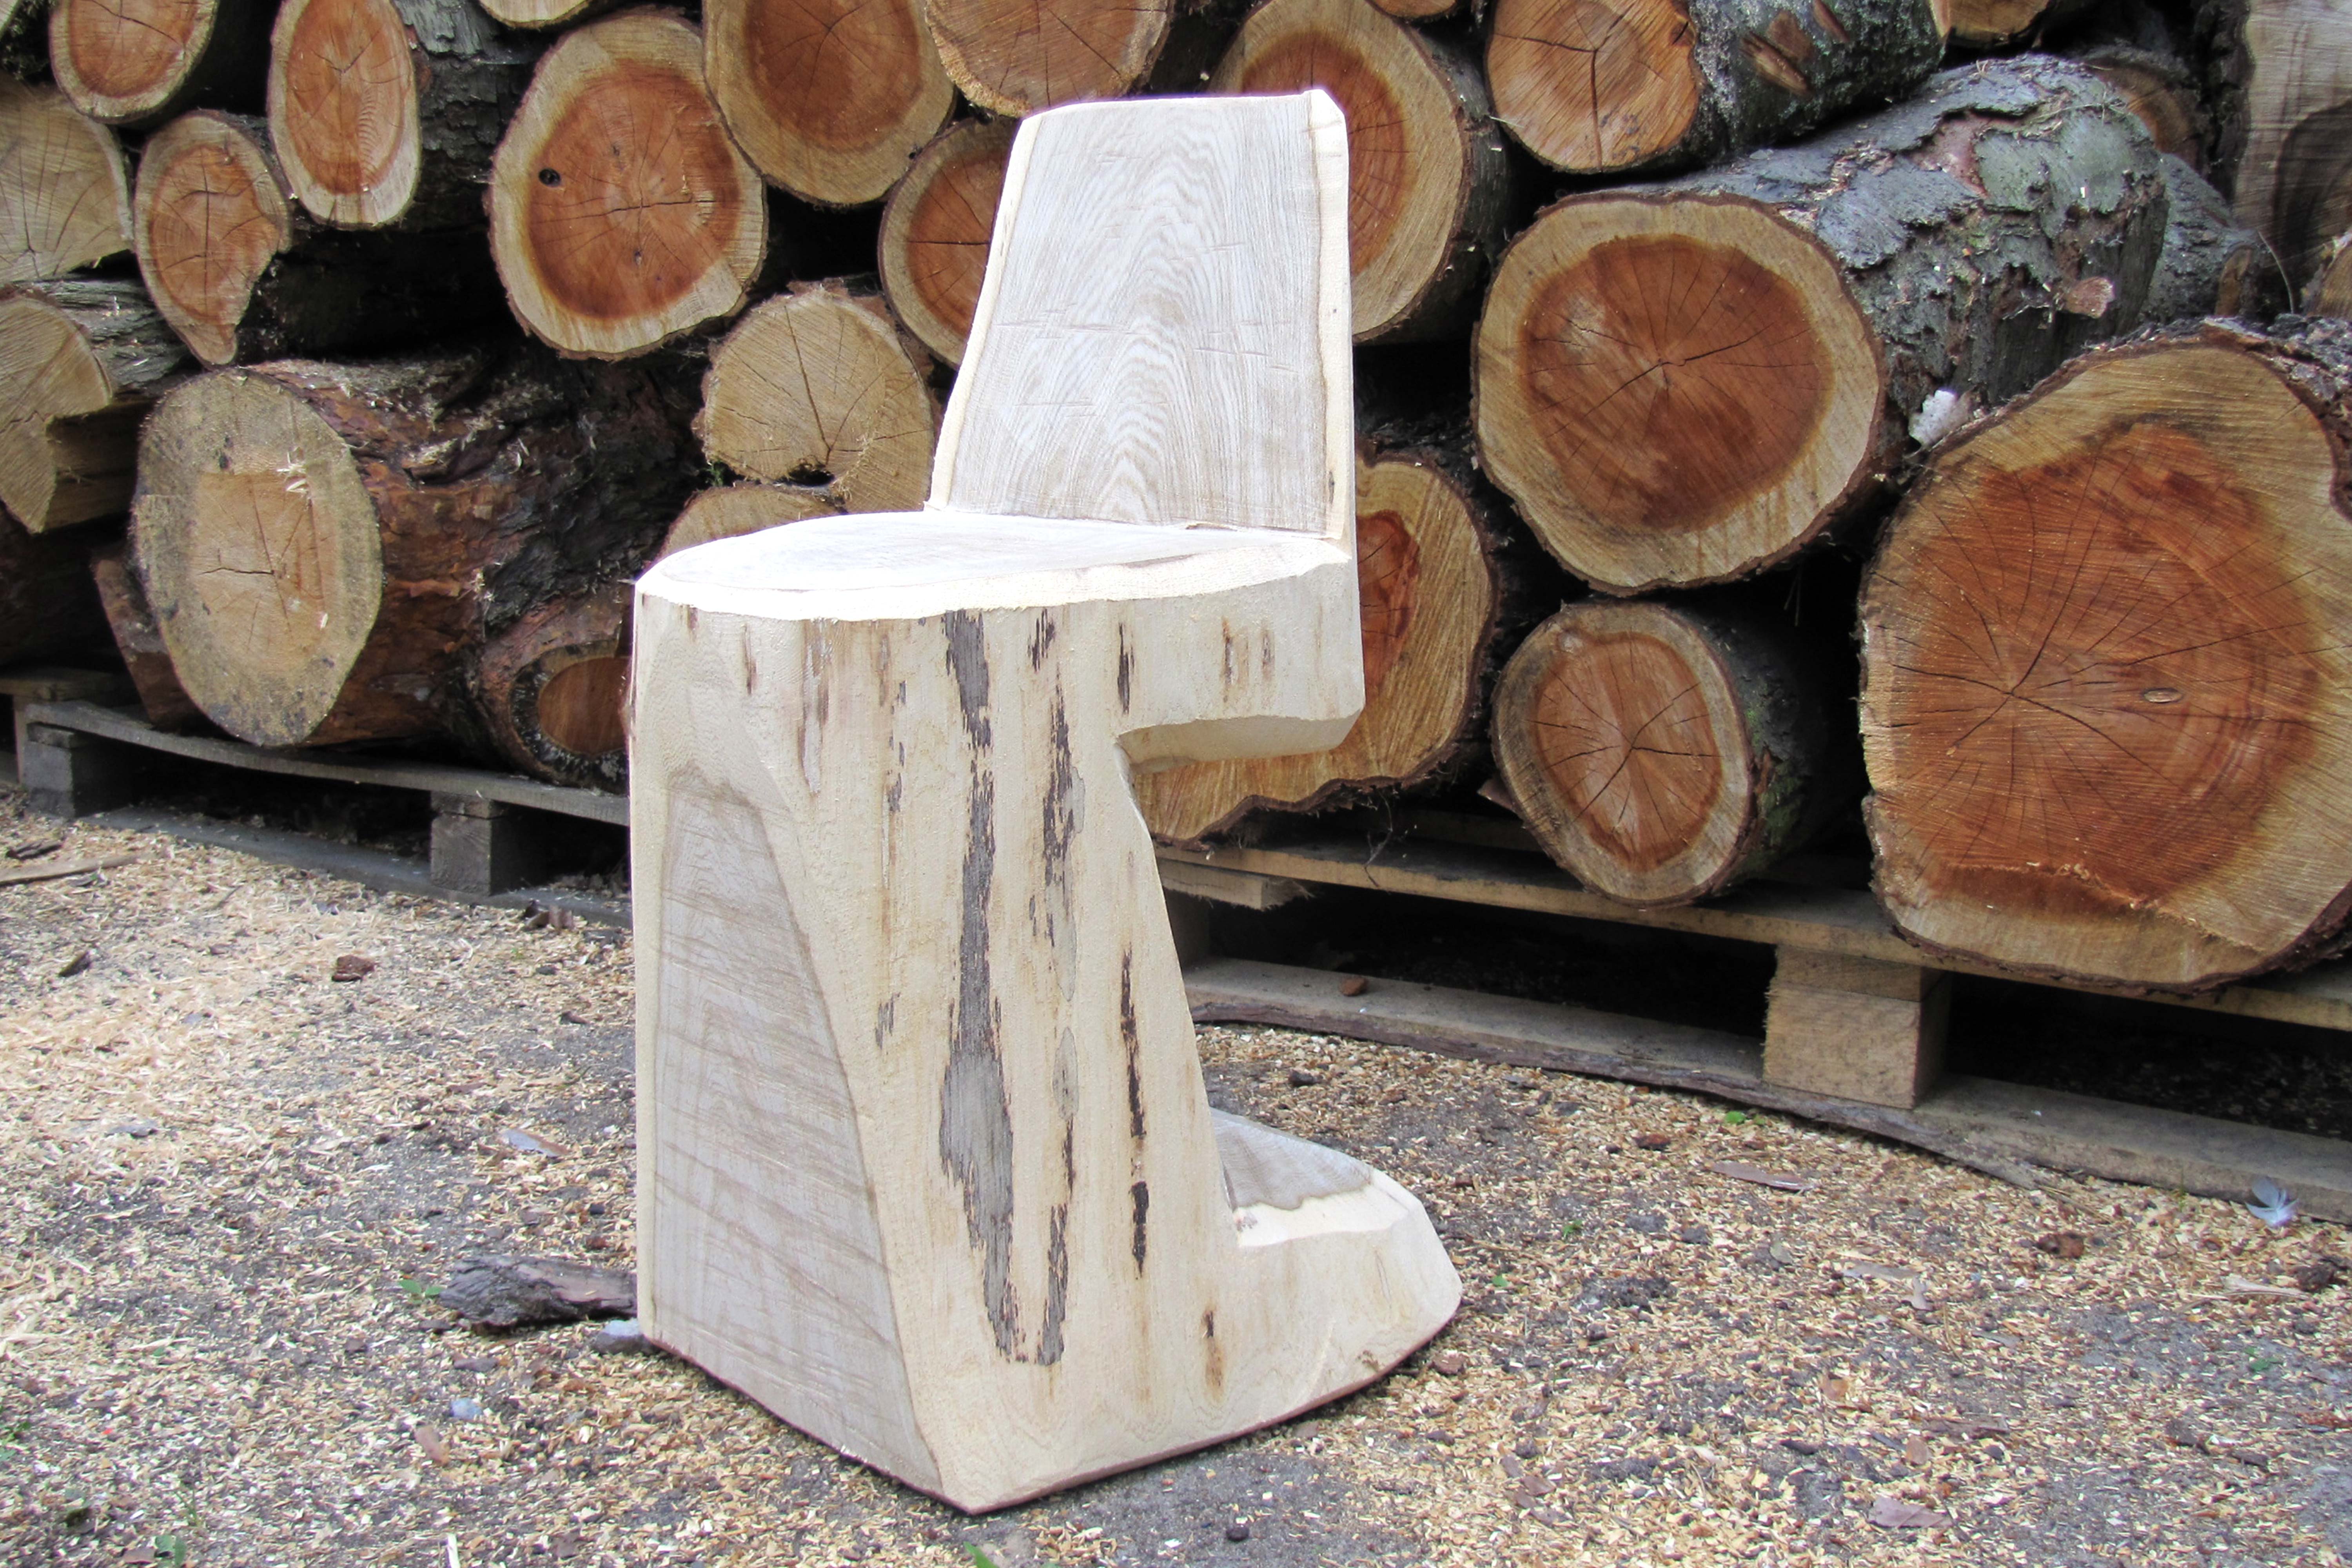 Zelfgemaakte houten stoel vóór een stapel boomstammen